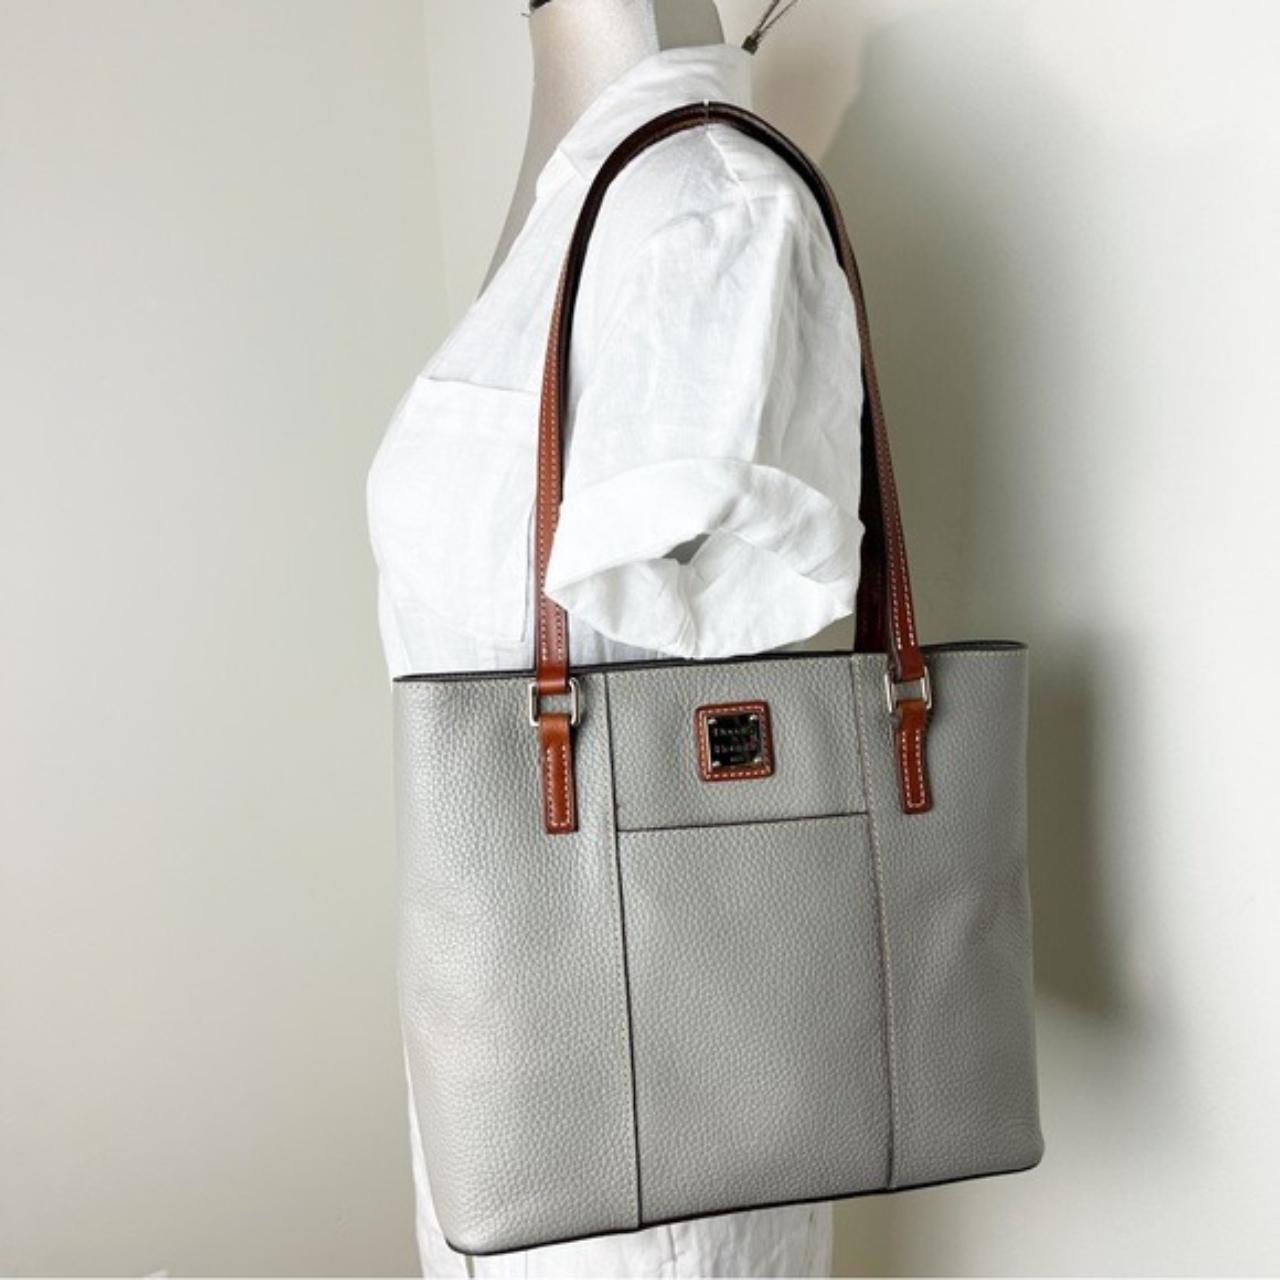 Dooney & Bourke Women's Tote Bags - Grey